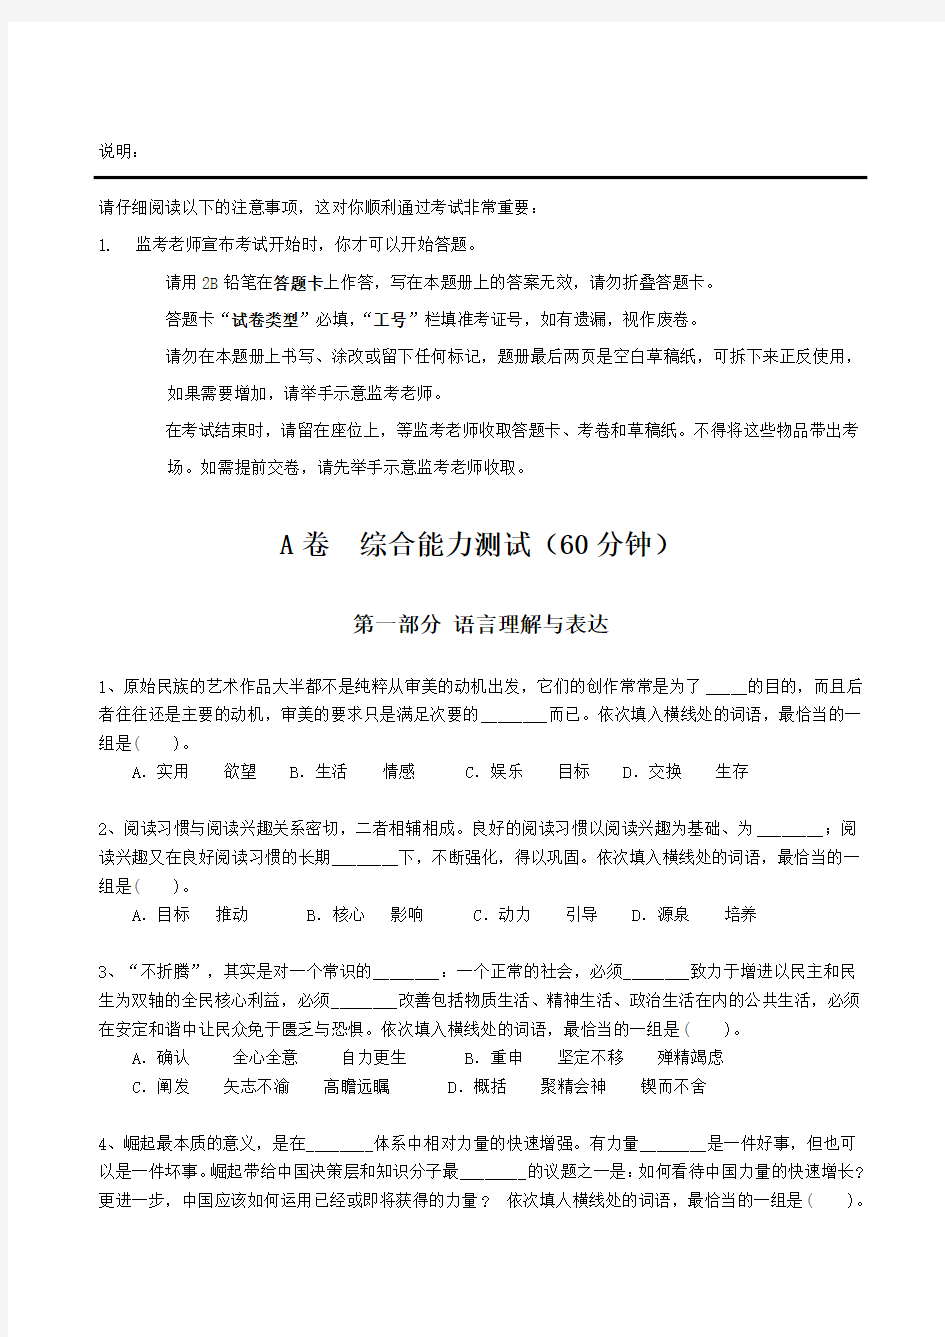 2019年中国移动招聘考试笔试试题和答案解析